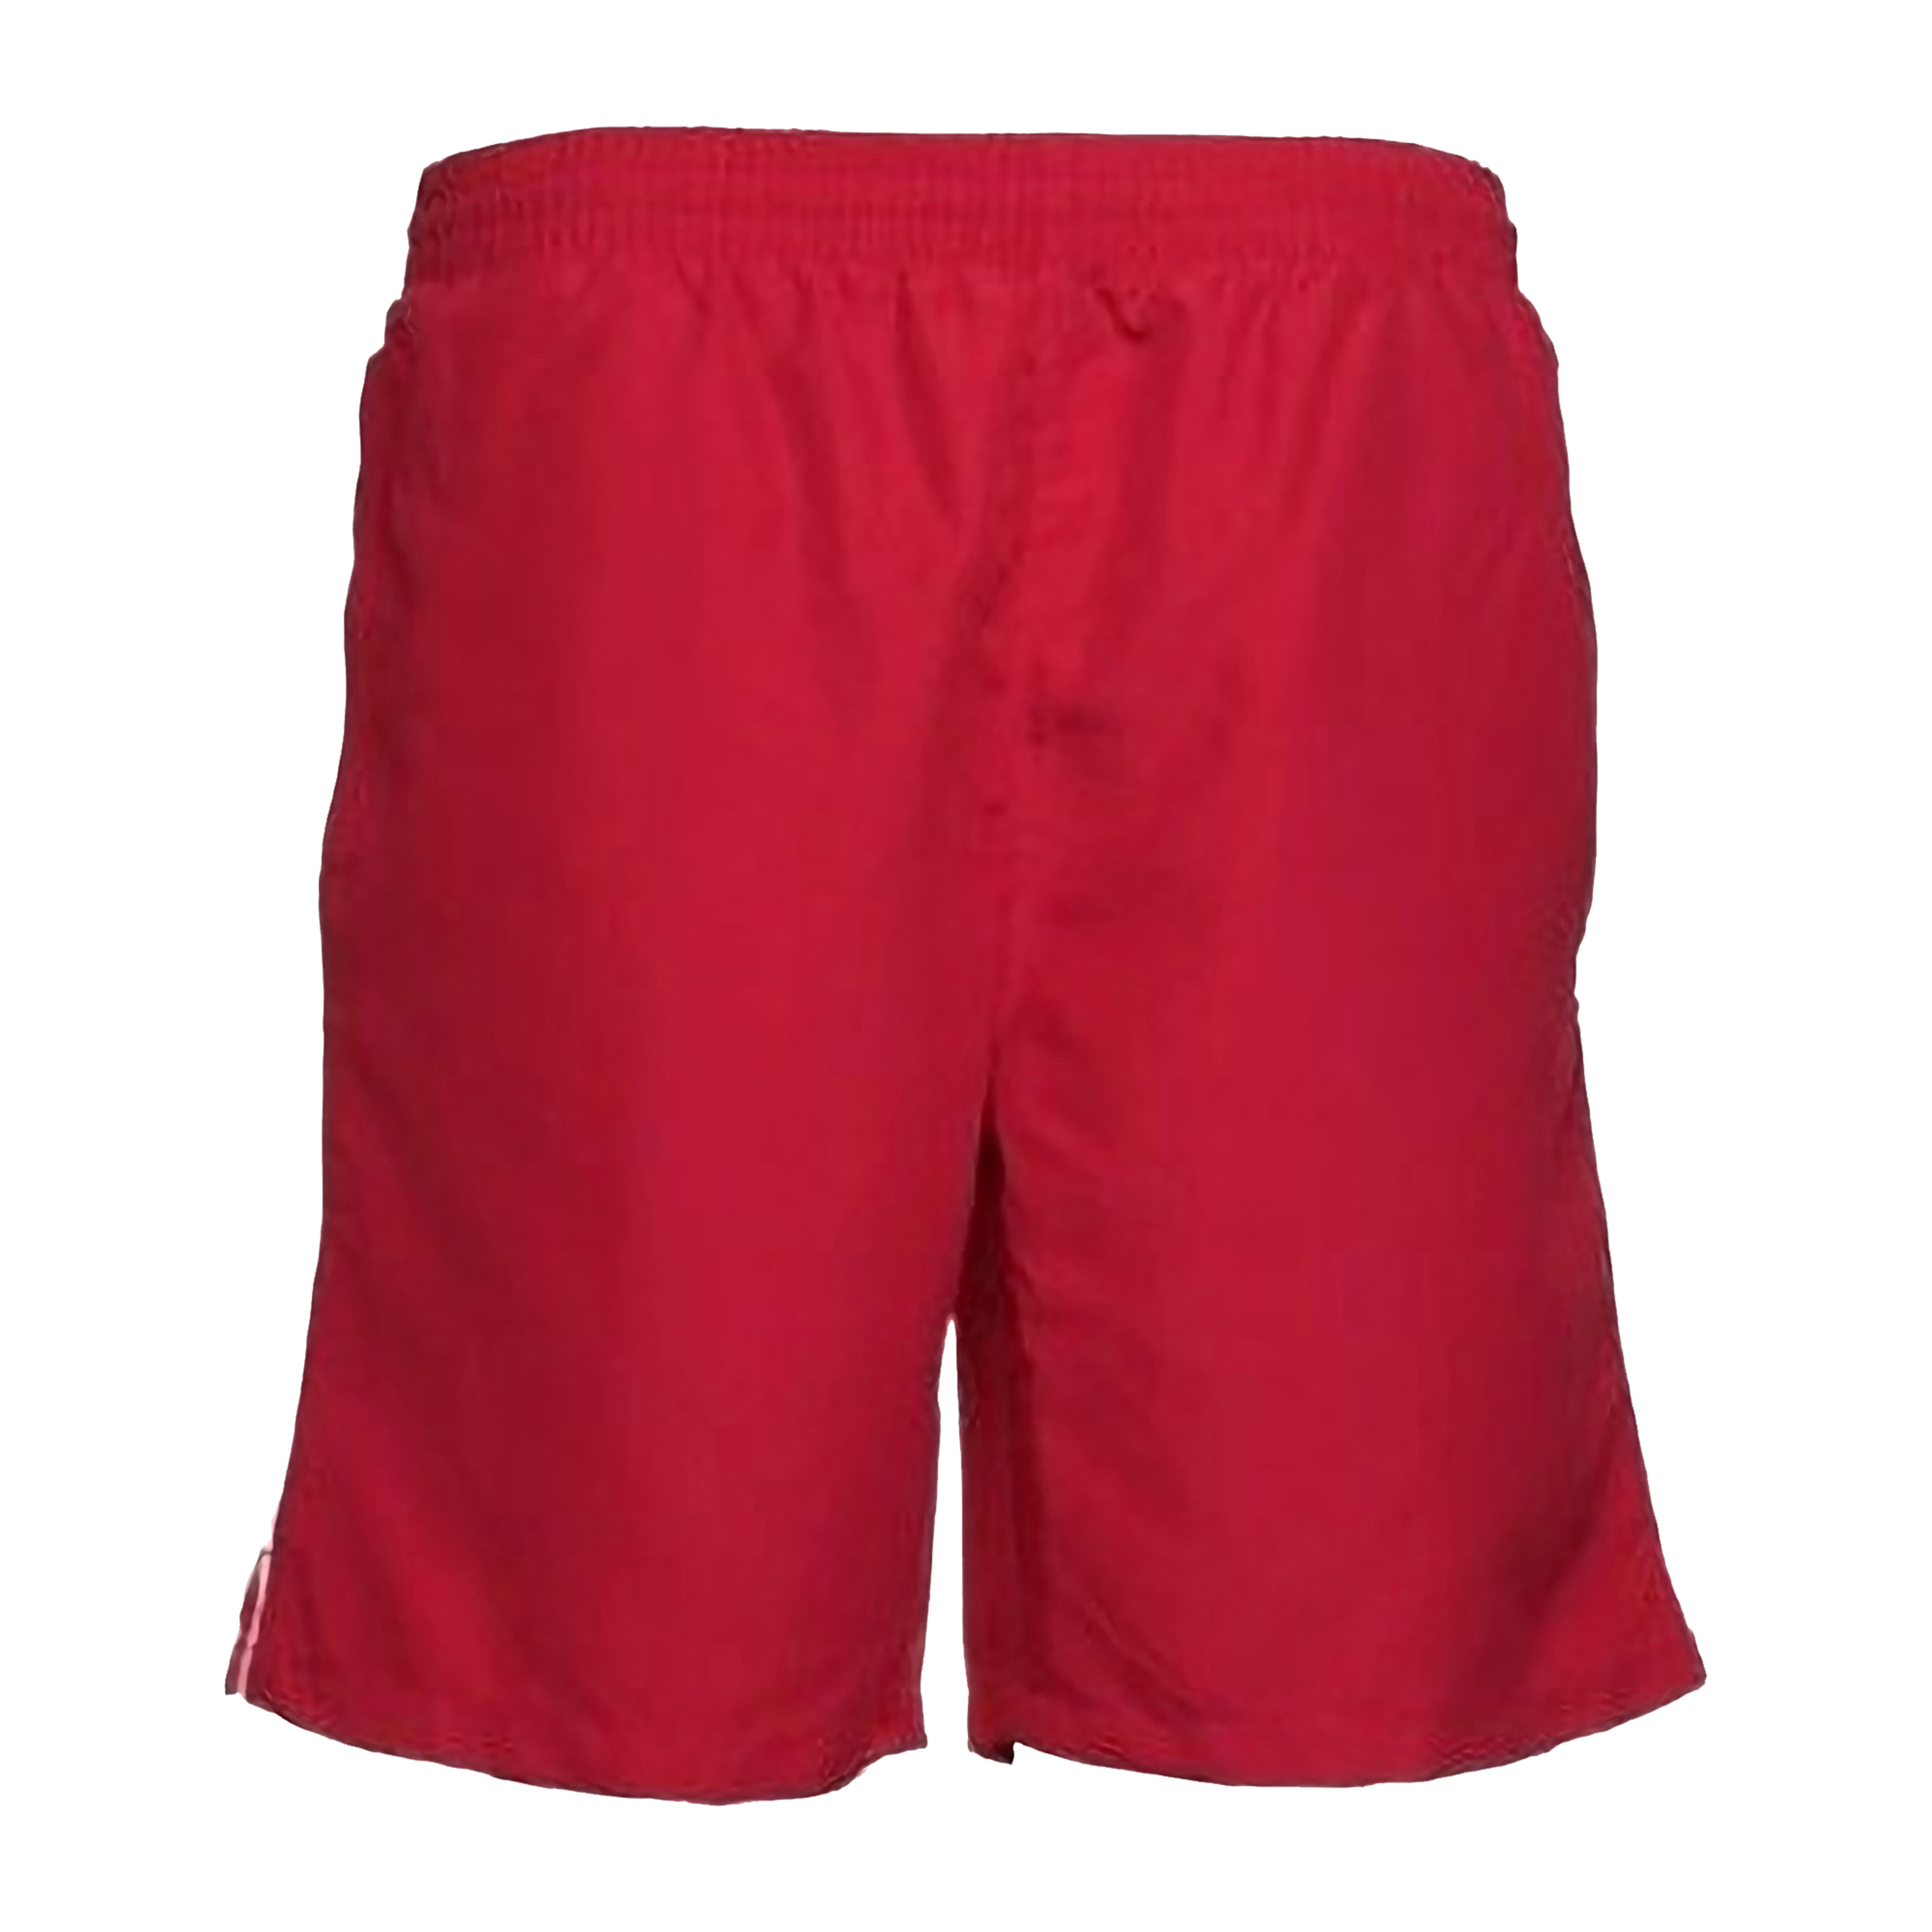 Pantalones Cortos De Deporte Gym/running/verano Gamegear - Rojo  MKP